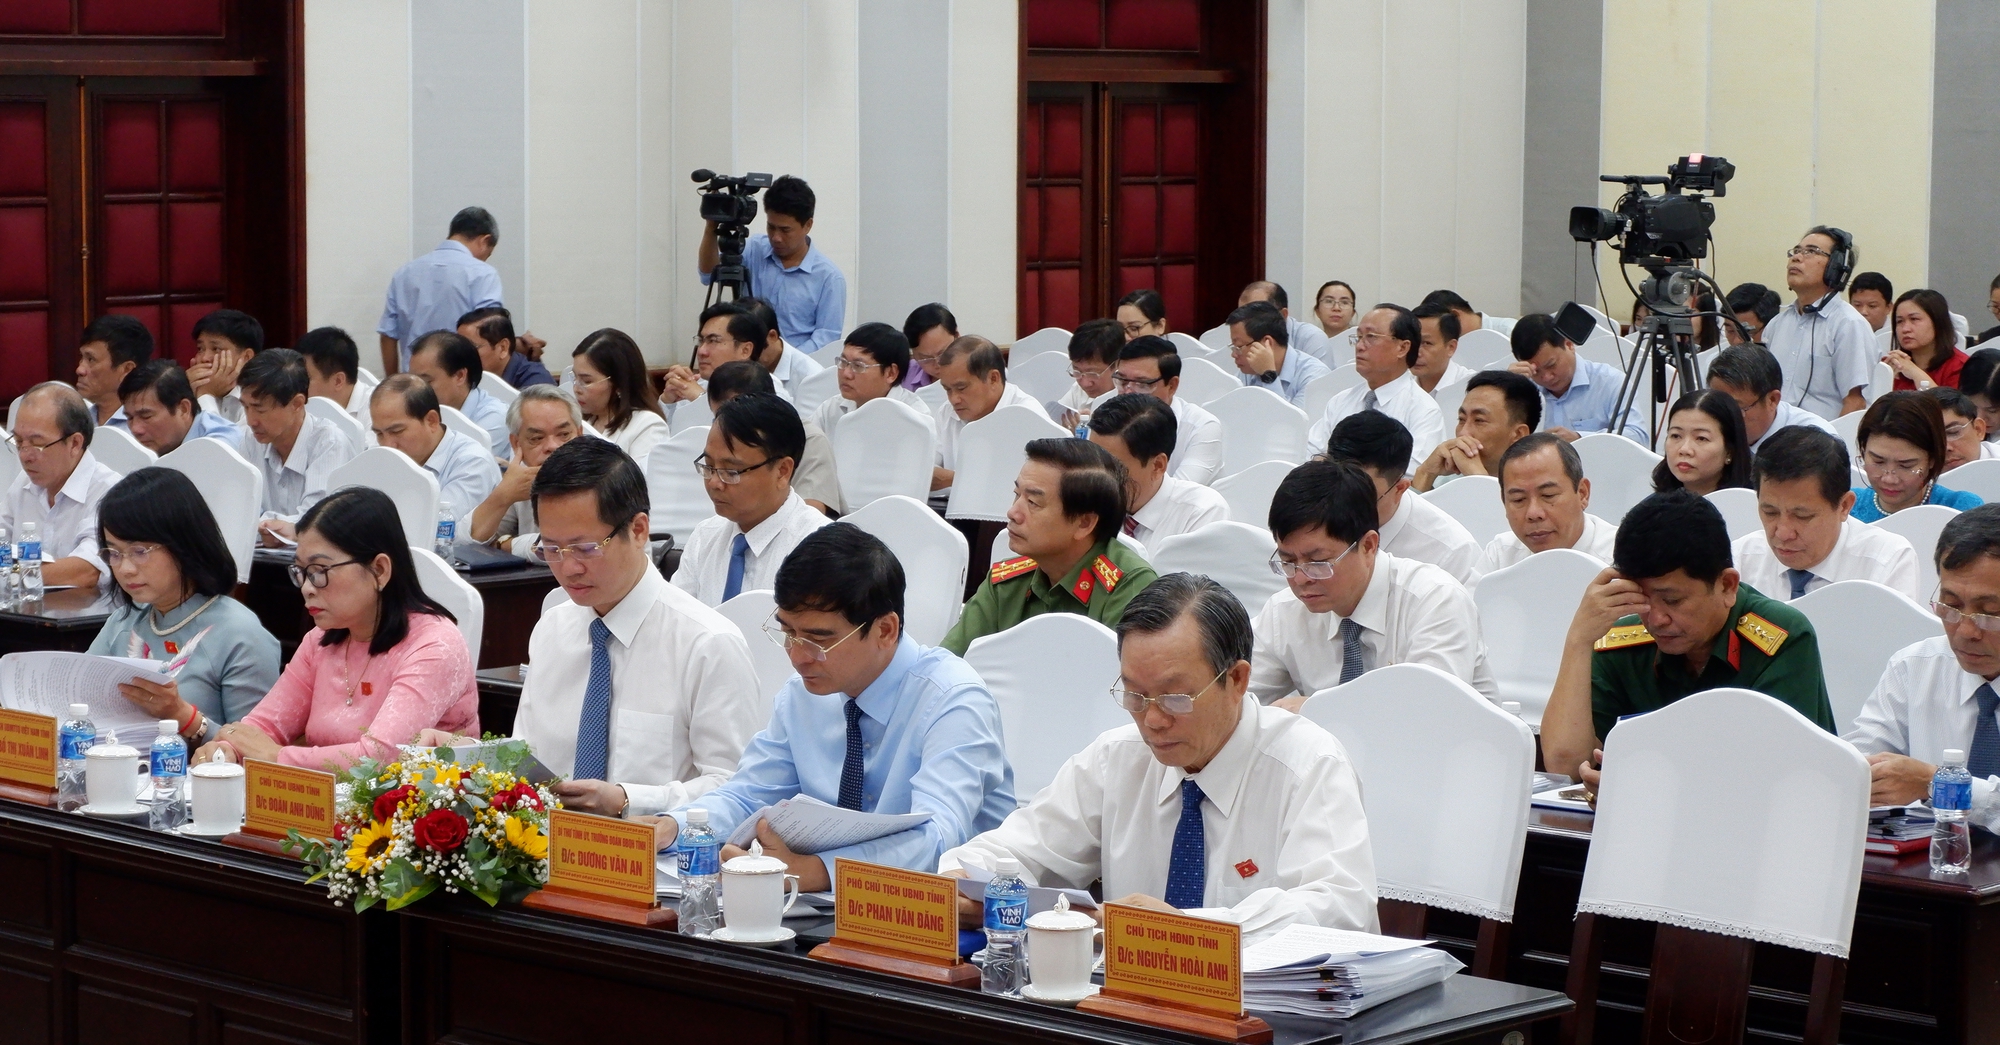 Ông Dương Văn An - Bí thư Tỉnh ủy Bình Thuận: Tạo môi trường thuận lợi để thu hút đầu tư, phát triển kinh tế - Ảnh 2.